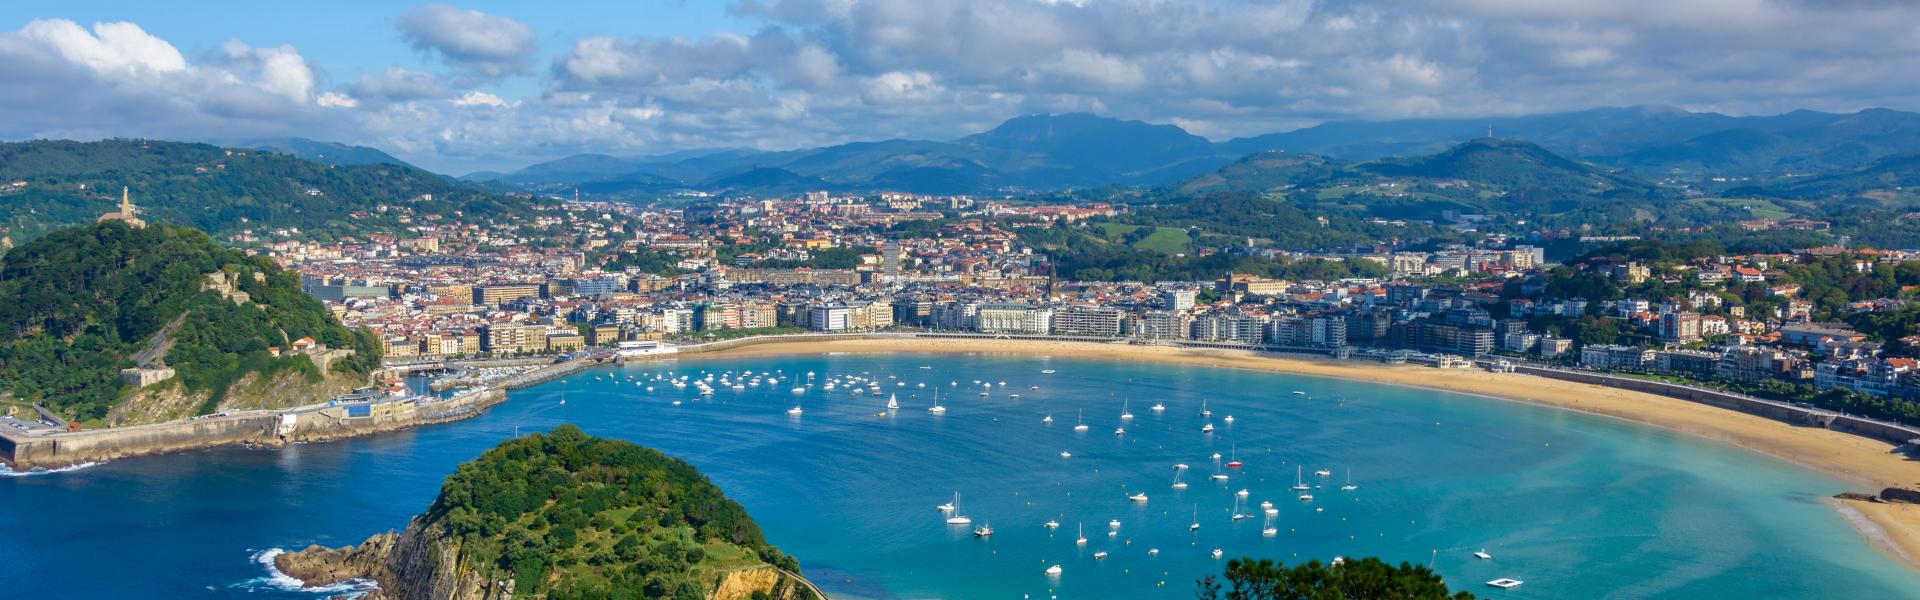 Ferienwohnungen & Ferienhäuser für Urlaub im Baskenland - Casamundo